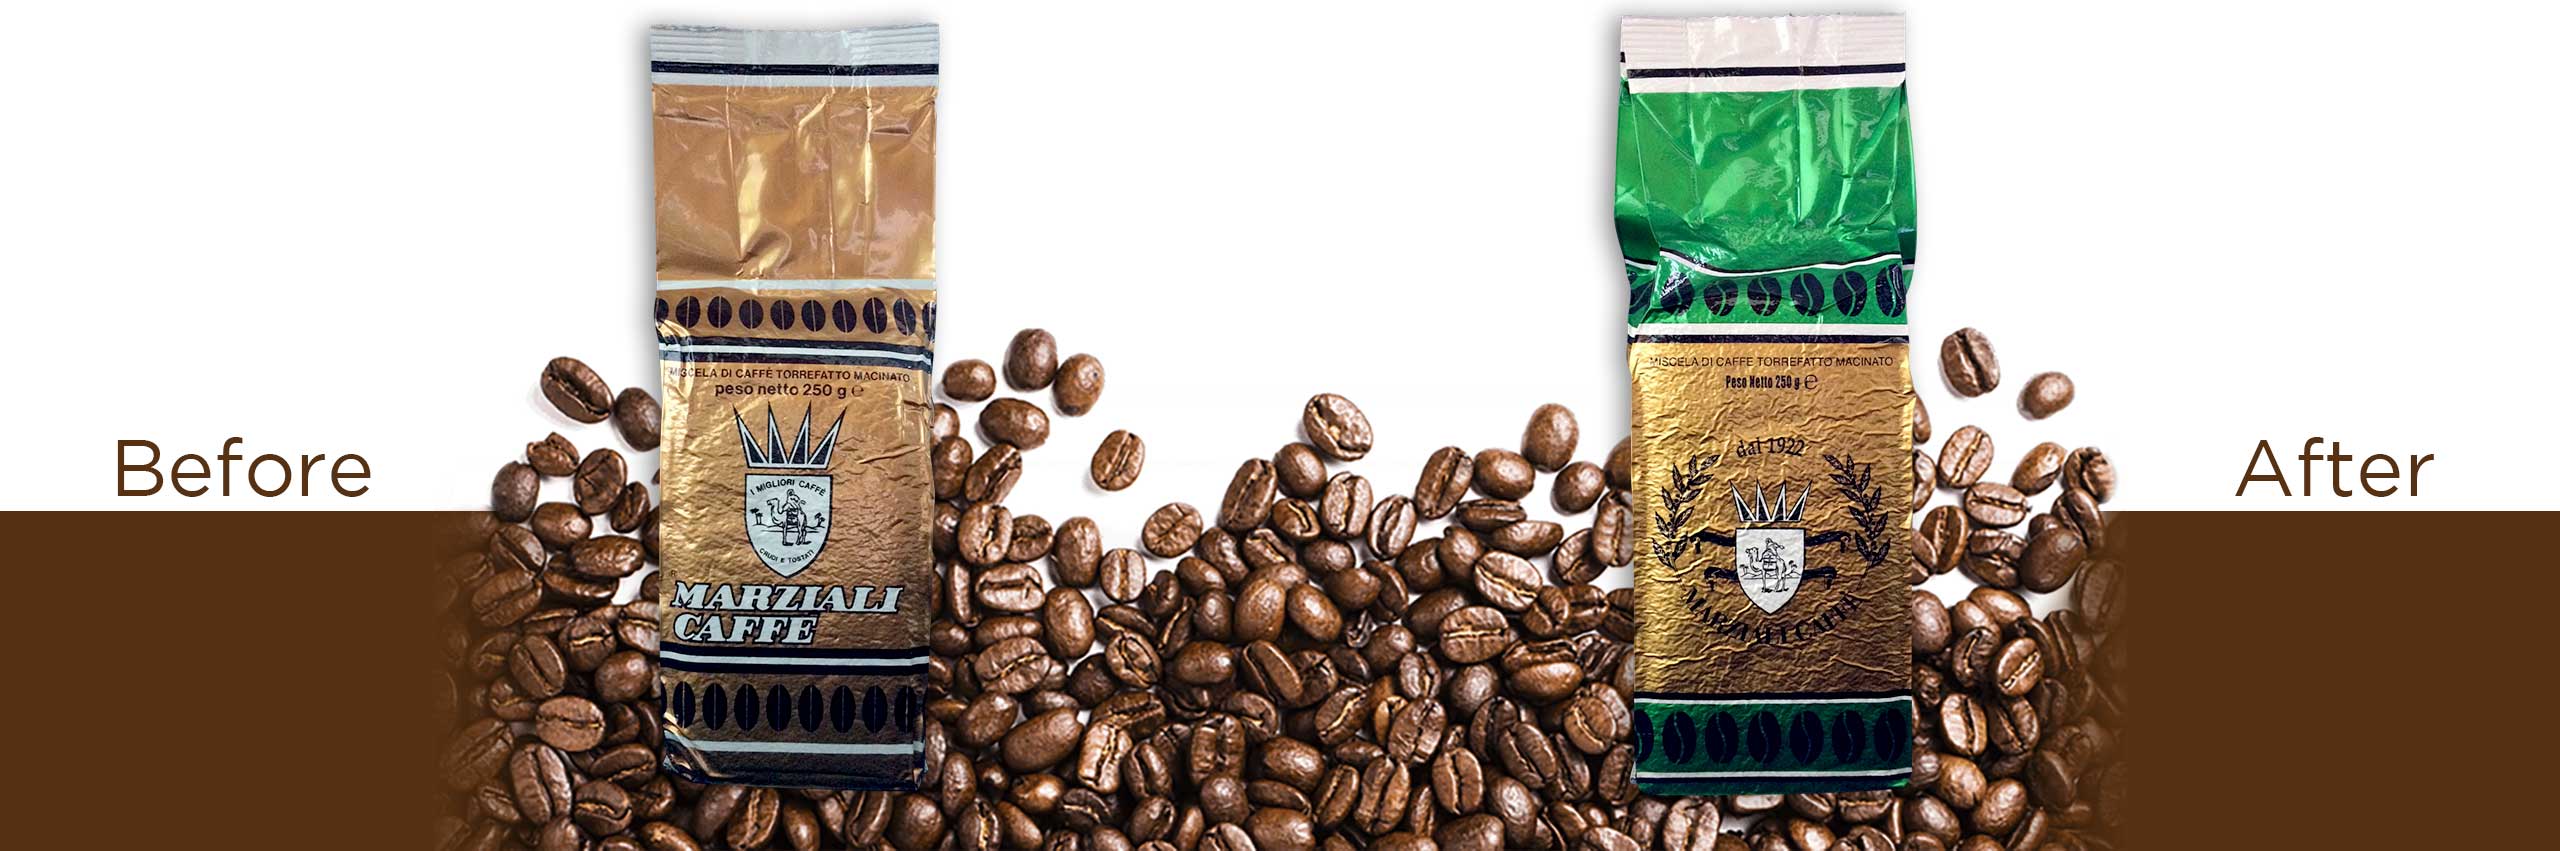 Marziali caffè, torrefazione di caffè, sede roma, Marziali caffè dal 1922, rebranding, rebranding marziali, restyling packaging, progettazione confezione | PRINGO